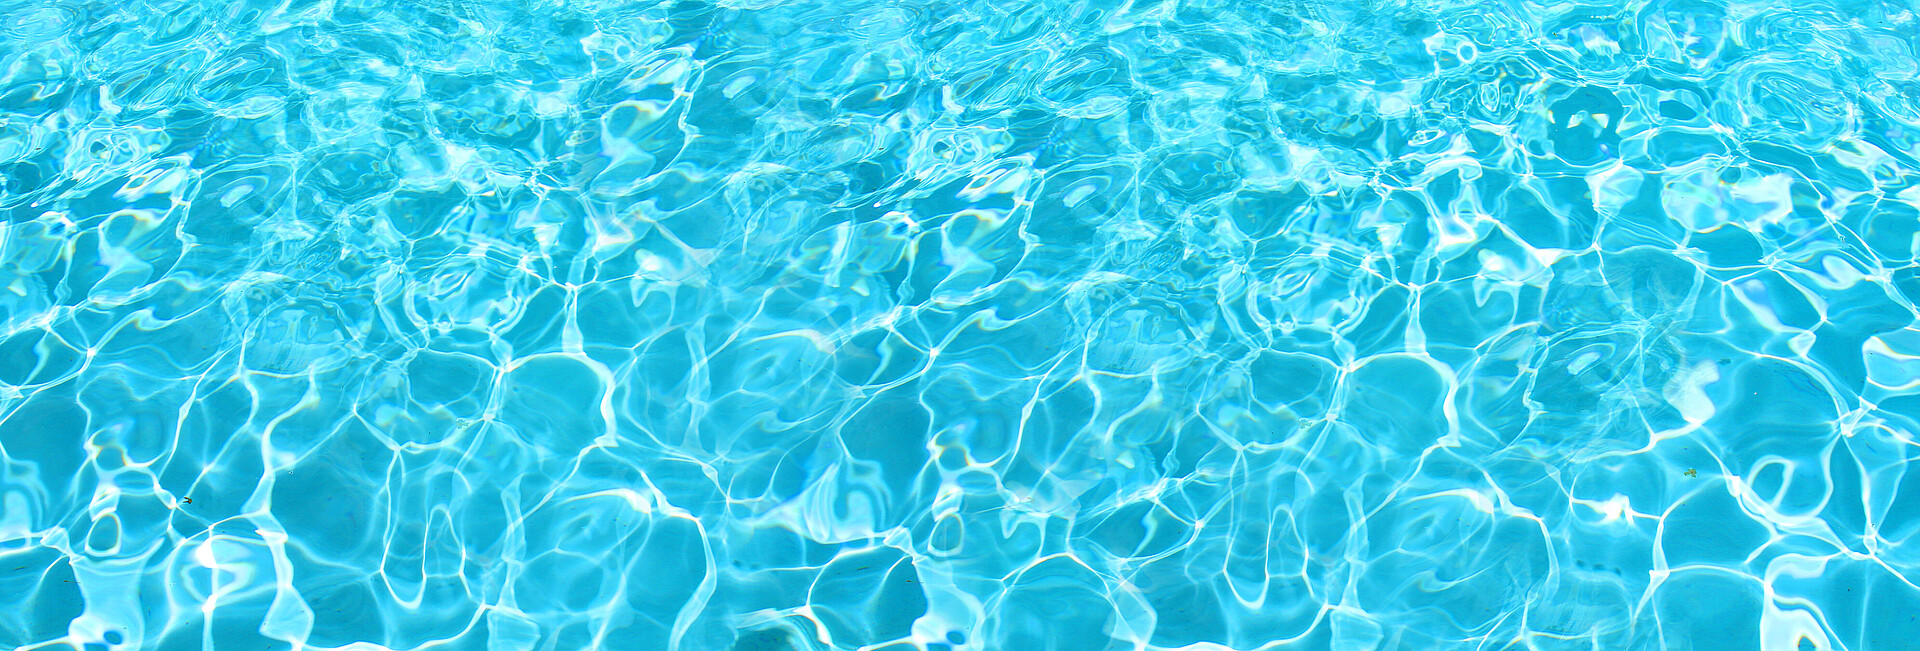 Fläche mit klarem hellblauen Wasser